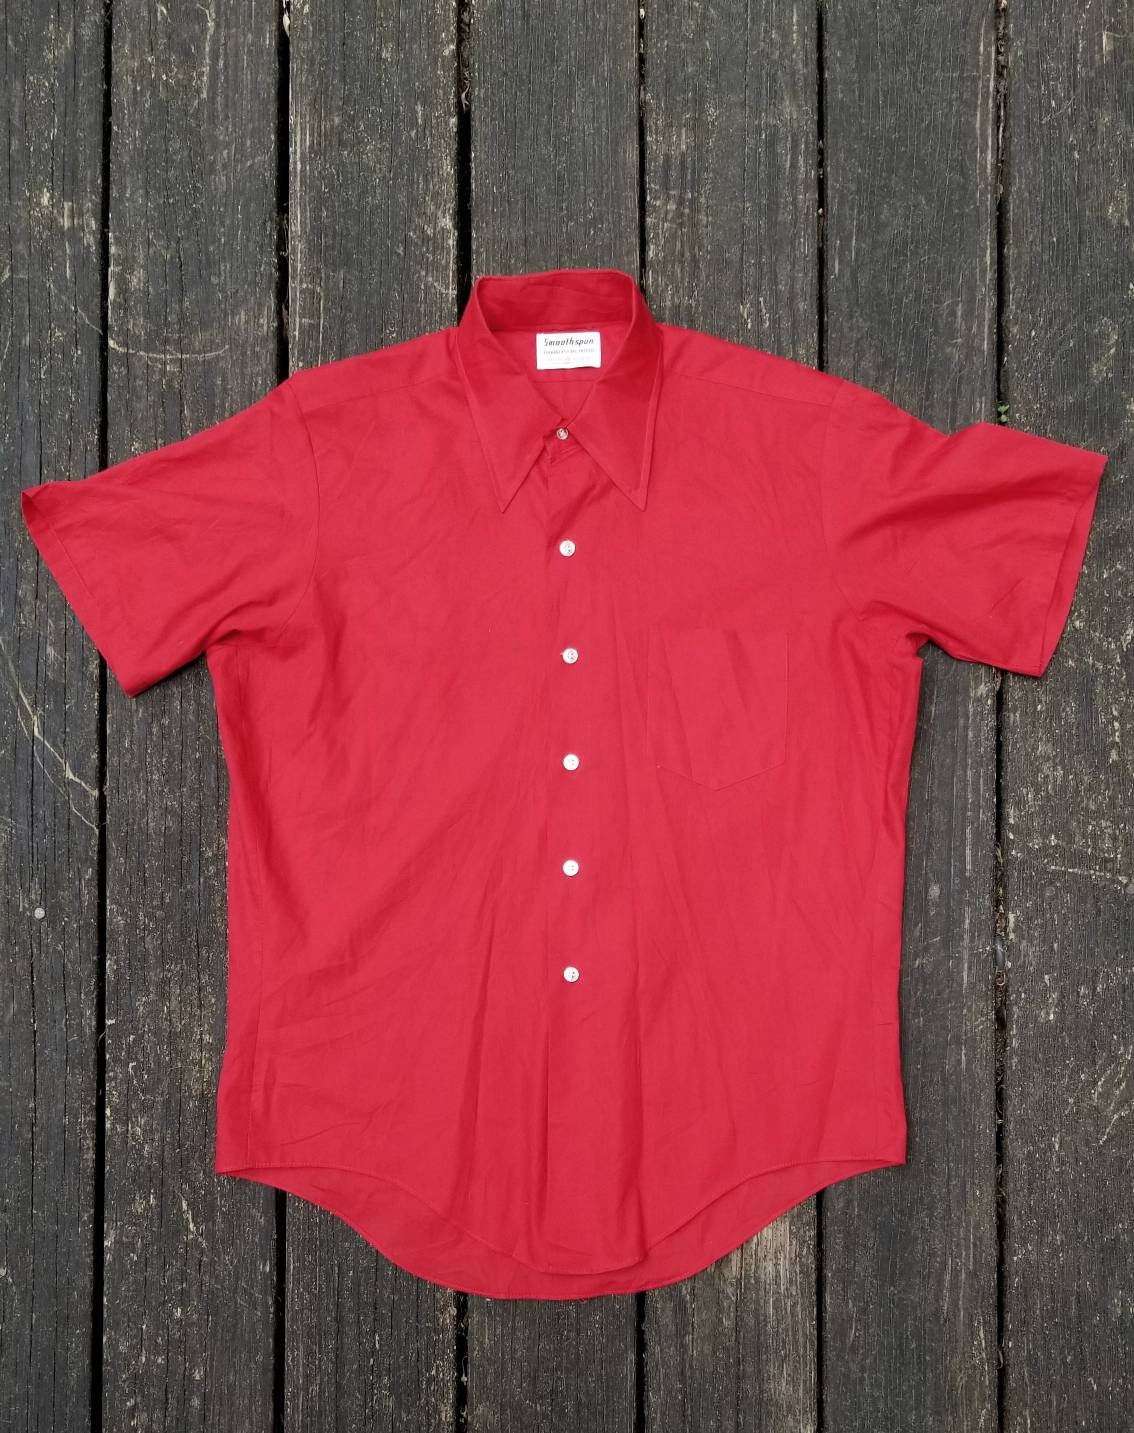 Vintage Lounge Wear Shirt, Men's Medium, Made in USA - Etsy Singapore